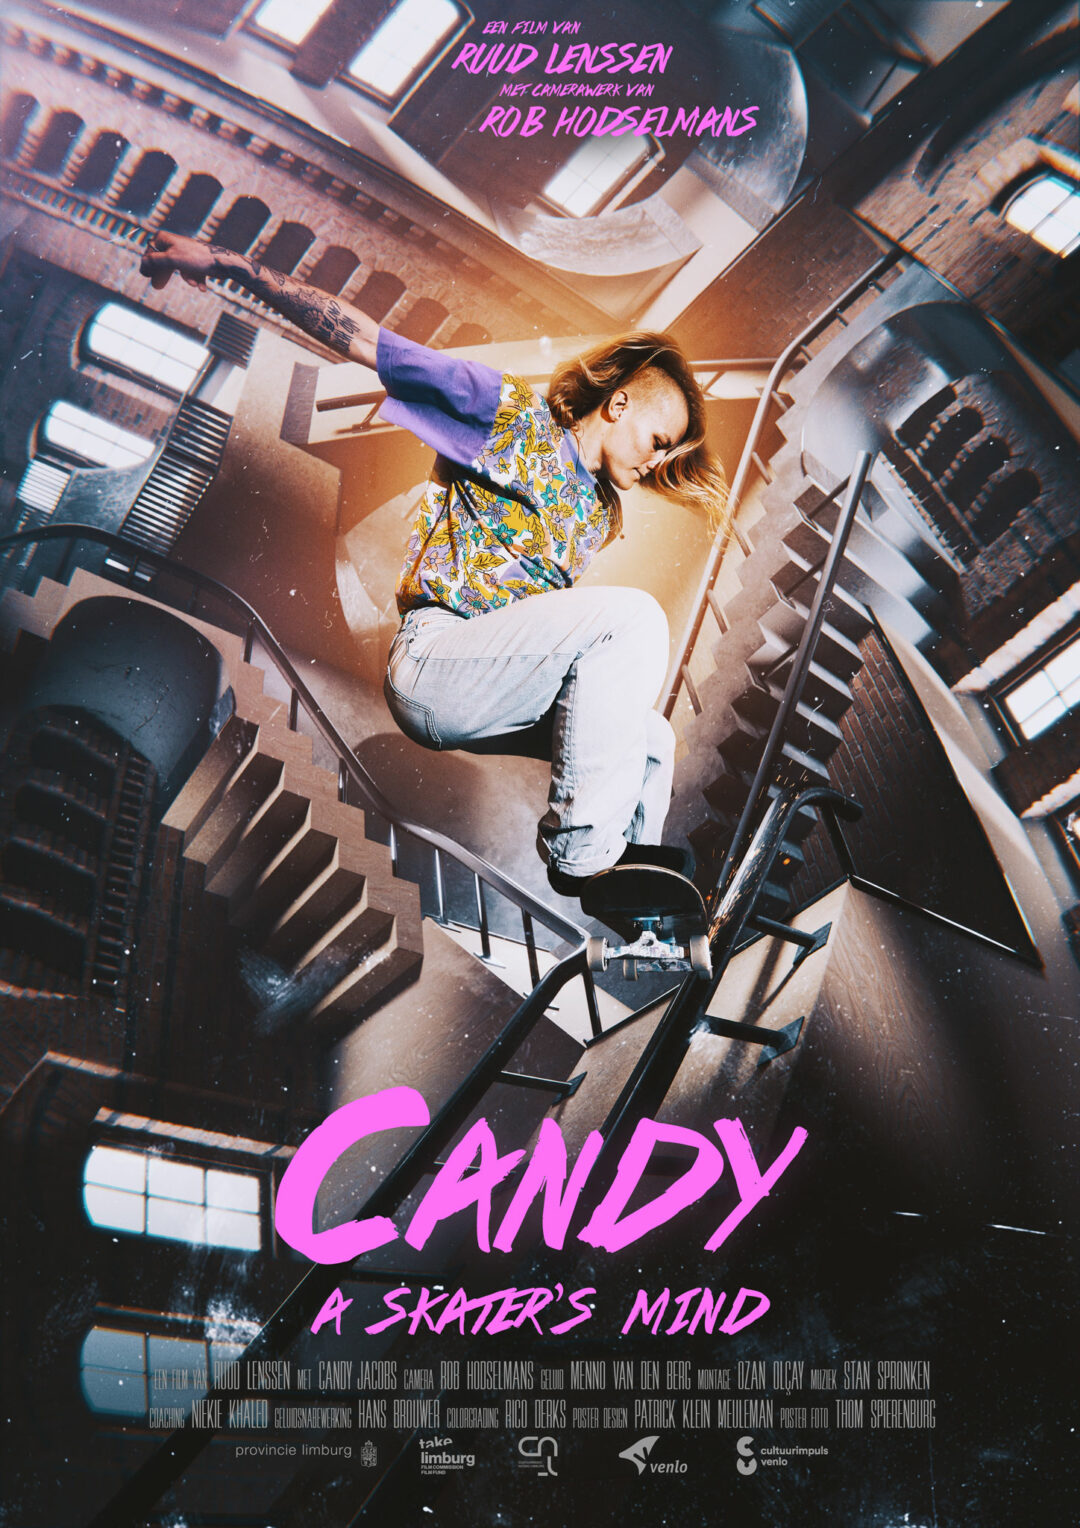 Candy_-A-Skater-s-Mind_ps_1_jpg_sd-high.jpg